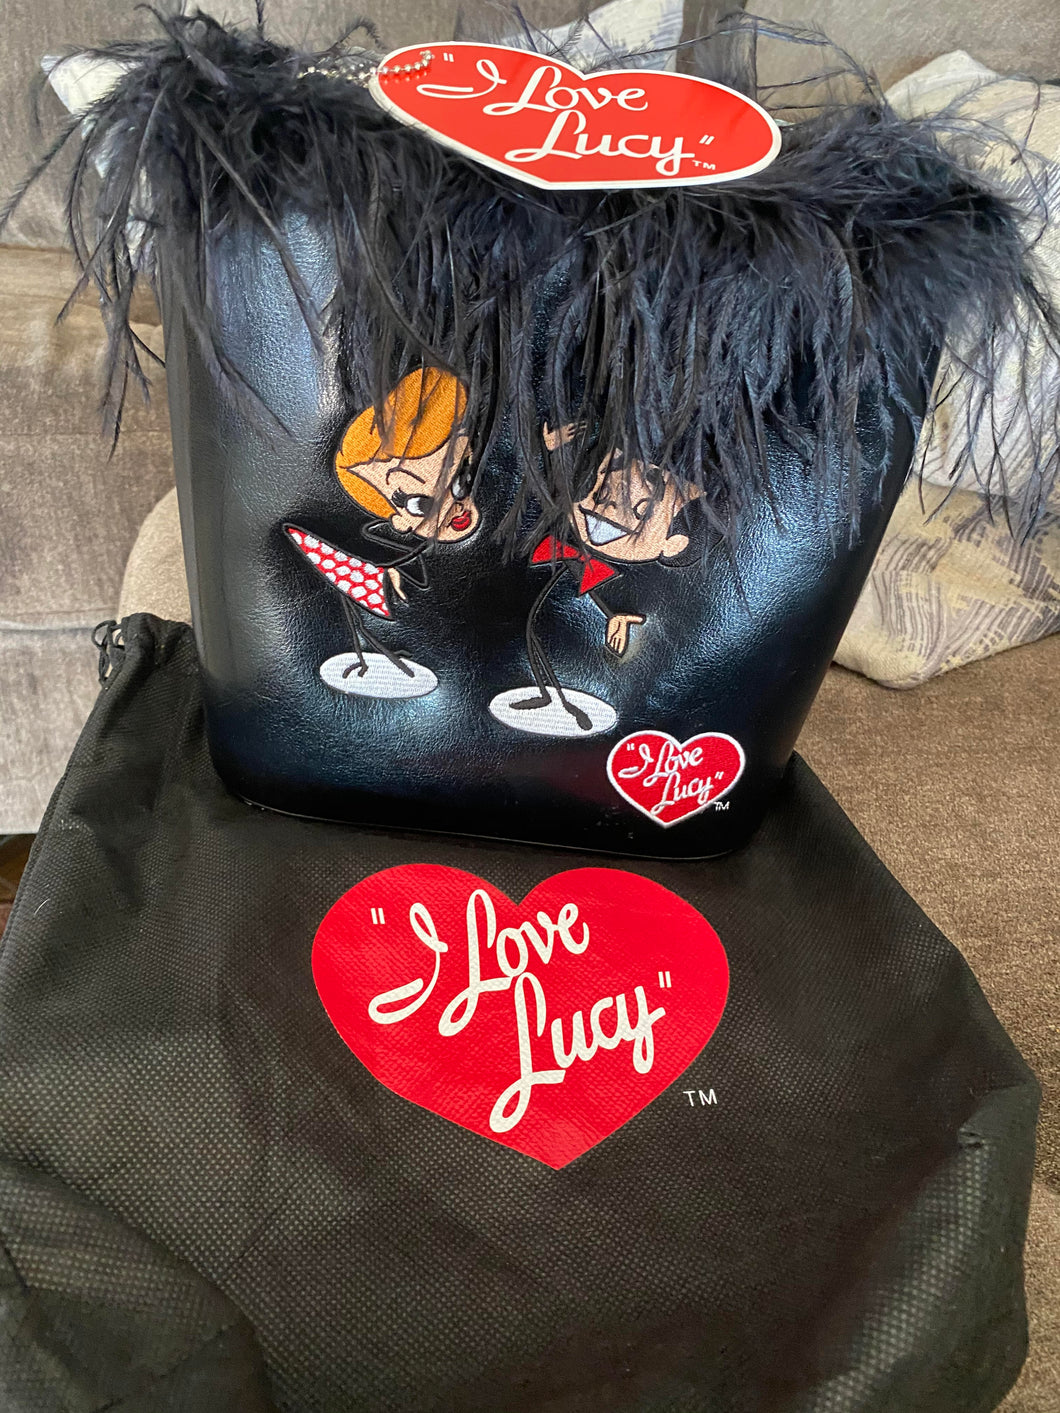 Lucy/Ricky handbag, purse